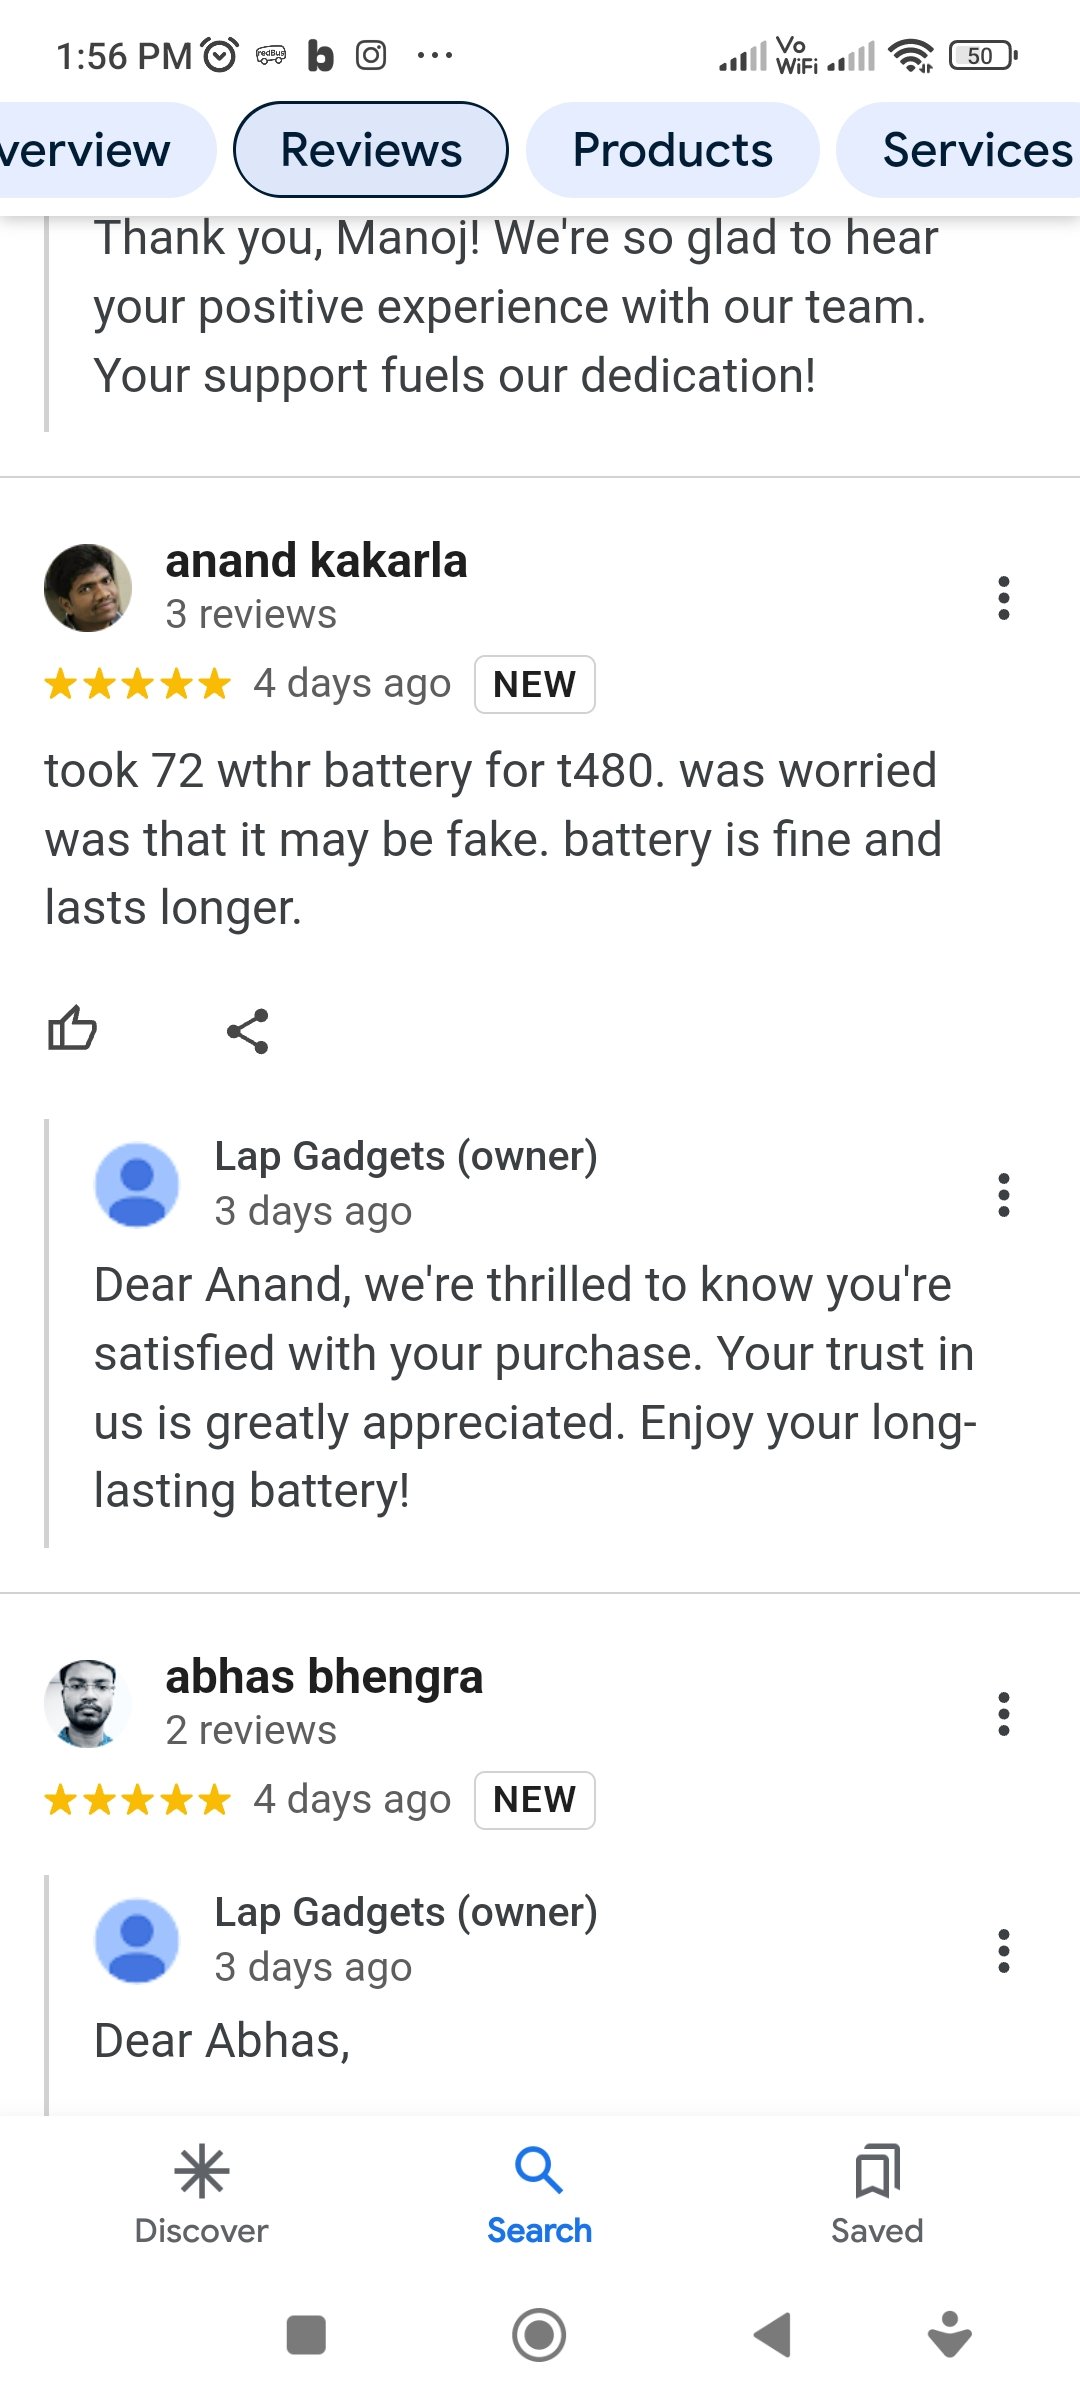 Lap Gadgets reviews